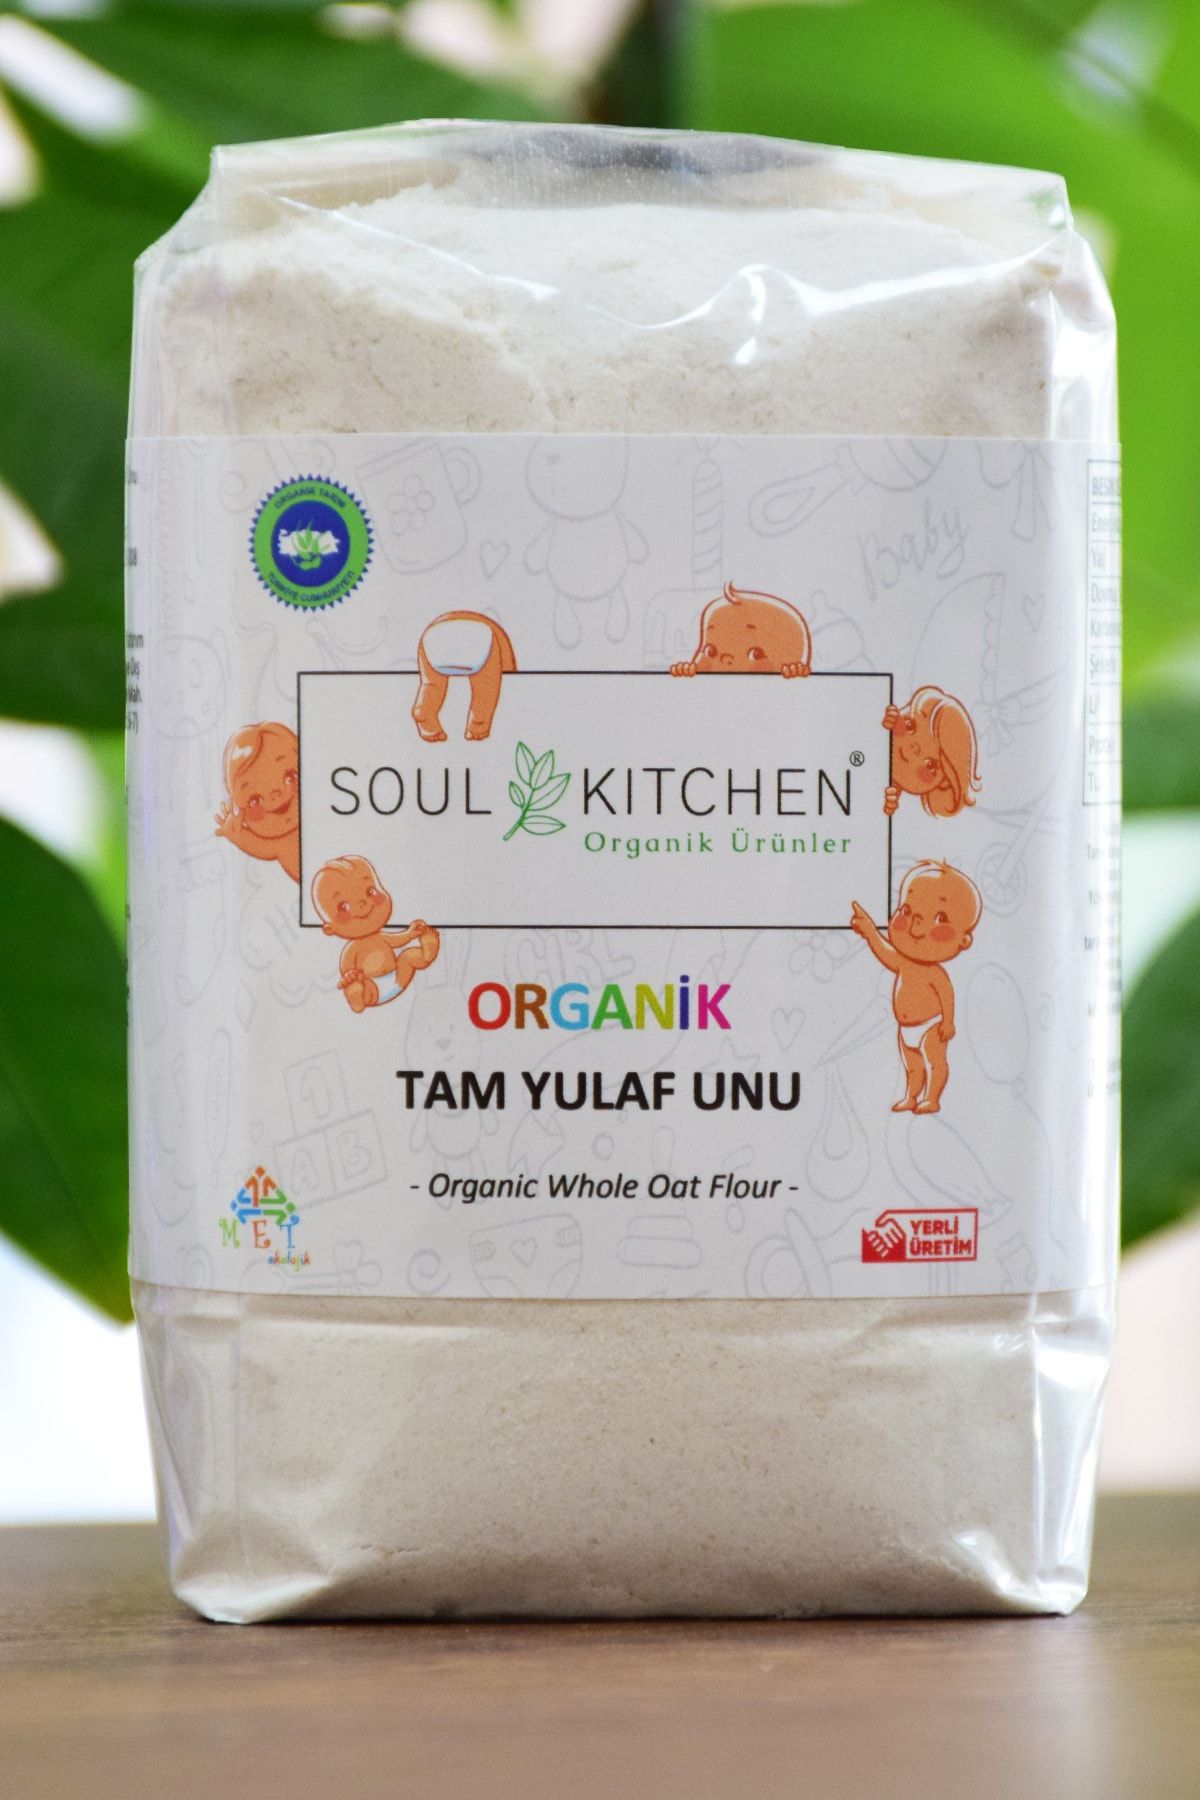 Soul Kitchen Organik Ürünler Organik Bebek Tam Yulaf Unu 250gr